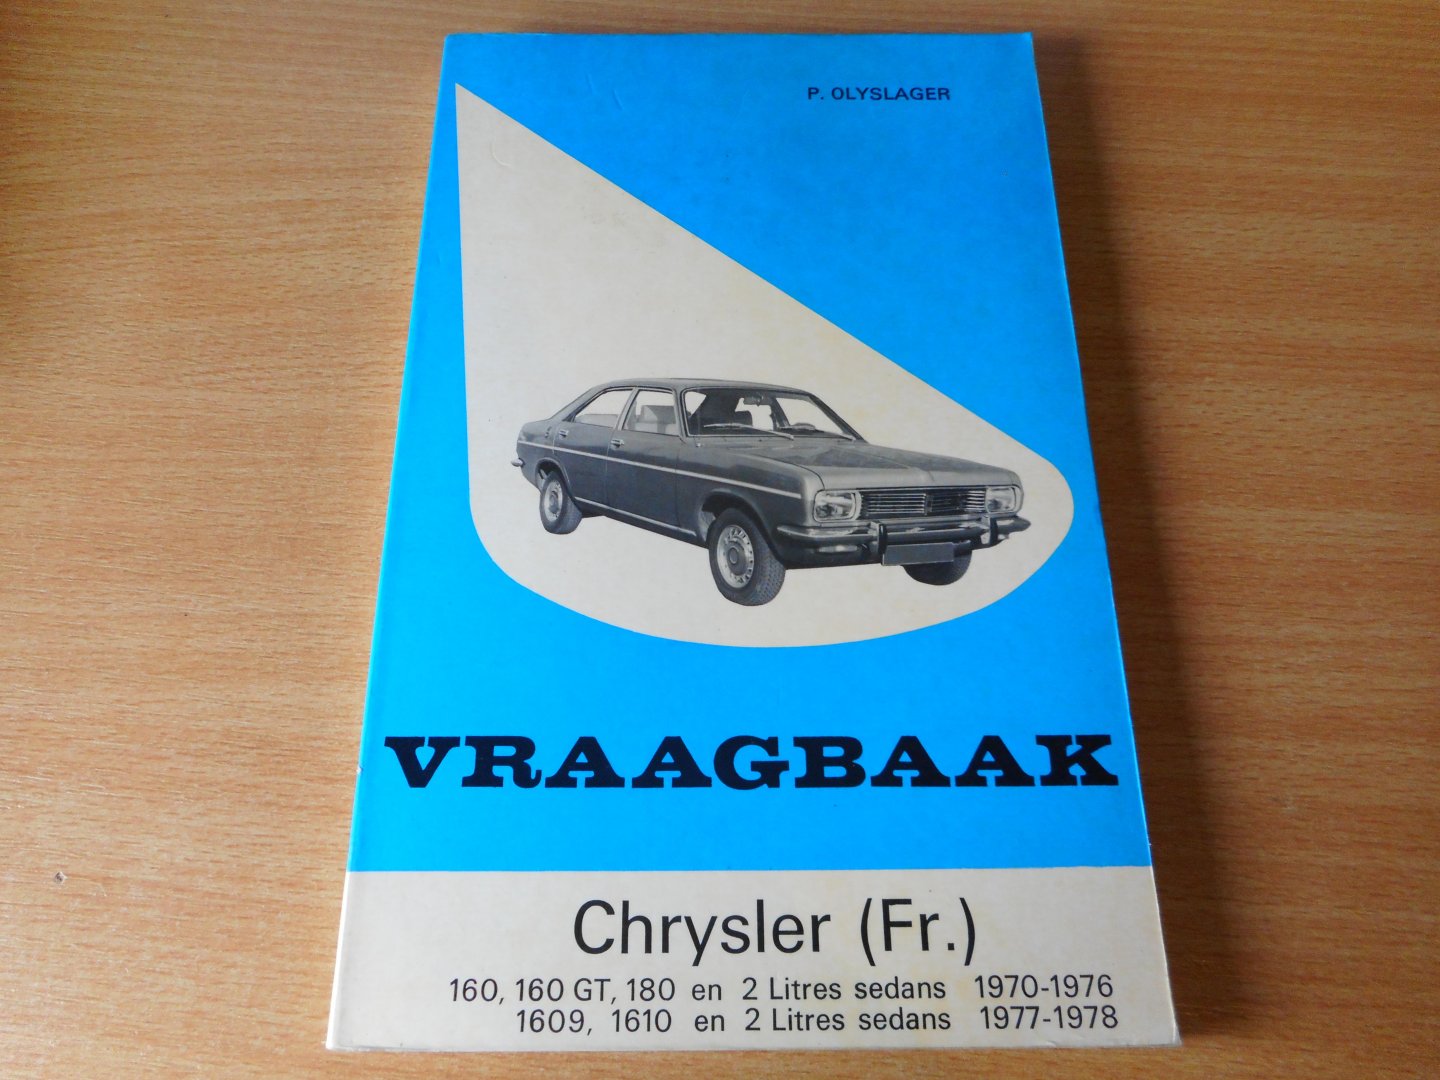 Olyslager, P. - Vraagbaak Chrysler (Fr.) 2 litres sedans 1970-1978